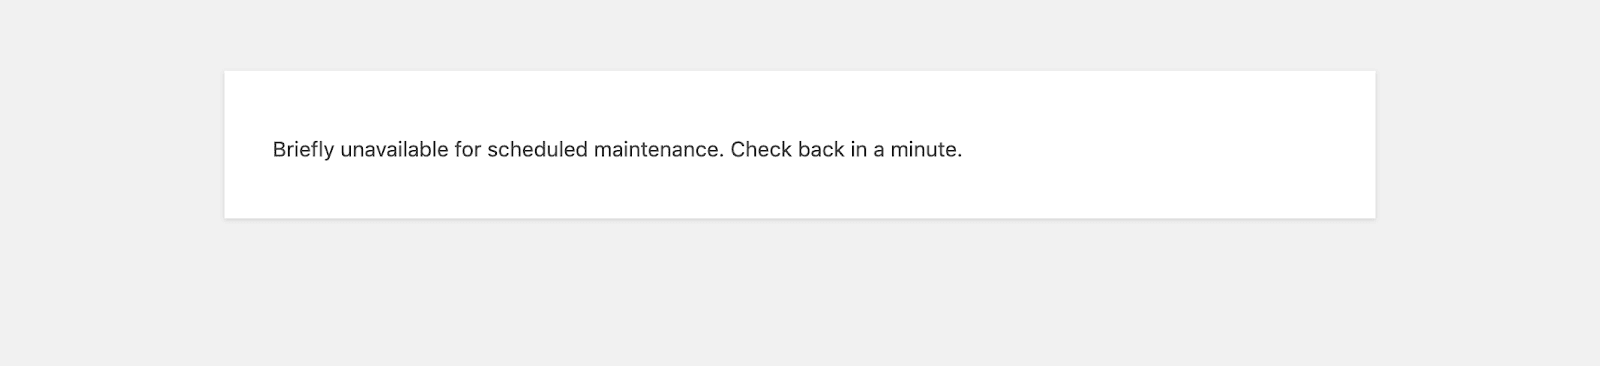 unavailable-scheduled-maintenance-1-1